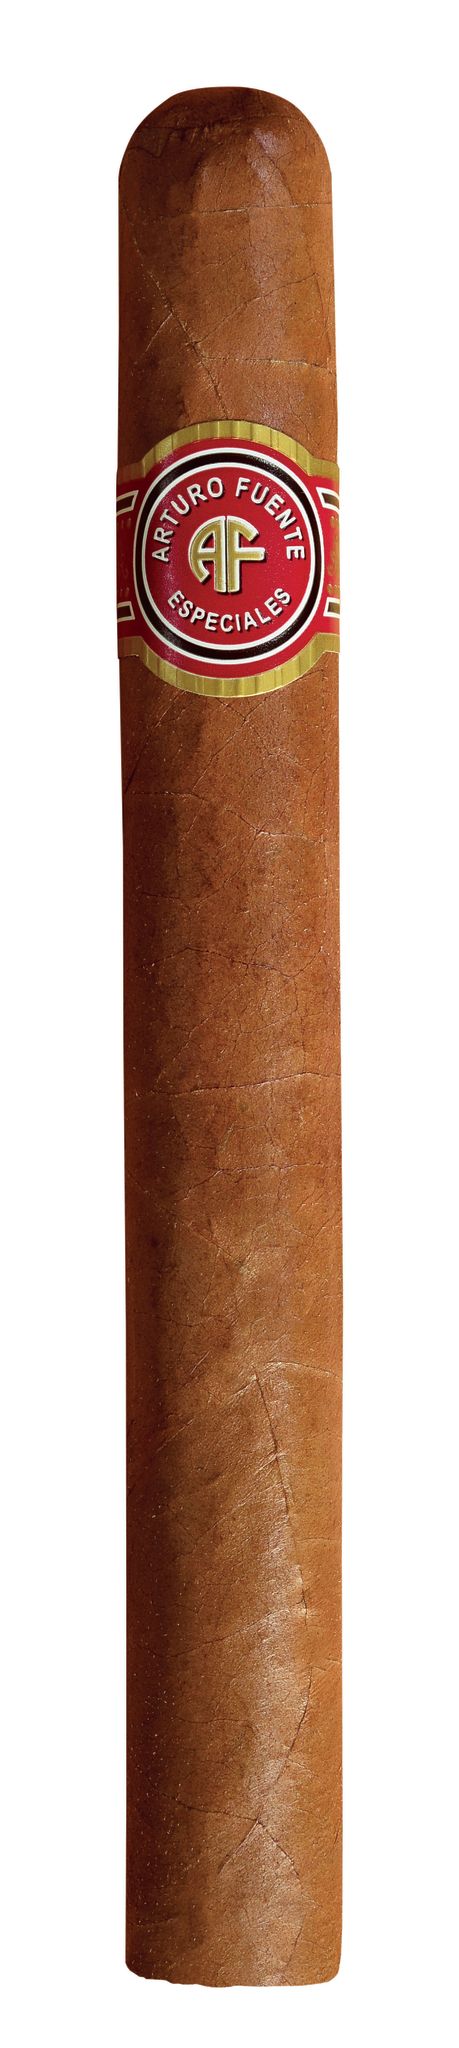 Single Arturo Fuente Especiales Emperador cigar